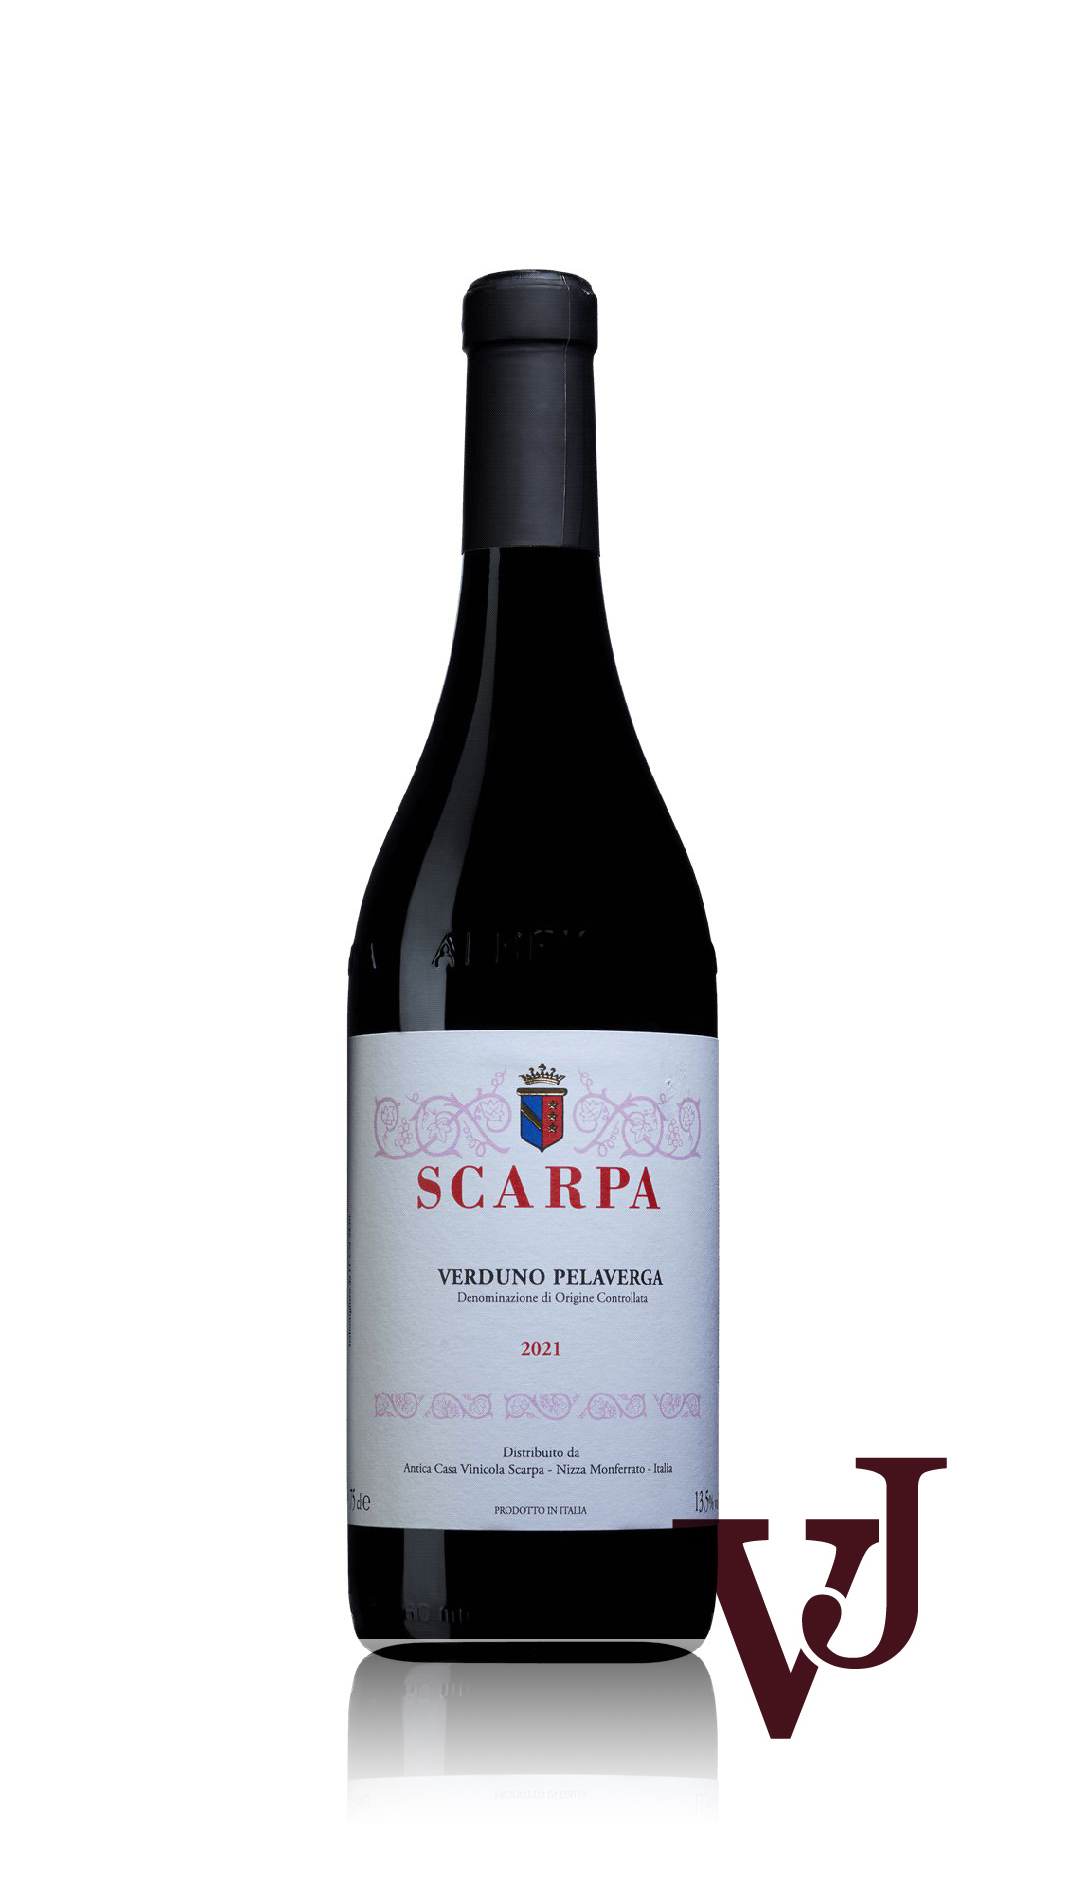 Rött Vin - Scarpa Verduno Pelaverga 2021 artikel nummer 9258001 från producenten Scarpa från Italien - Vinjournalen.se